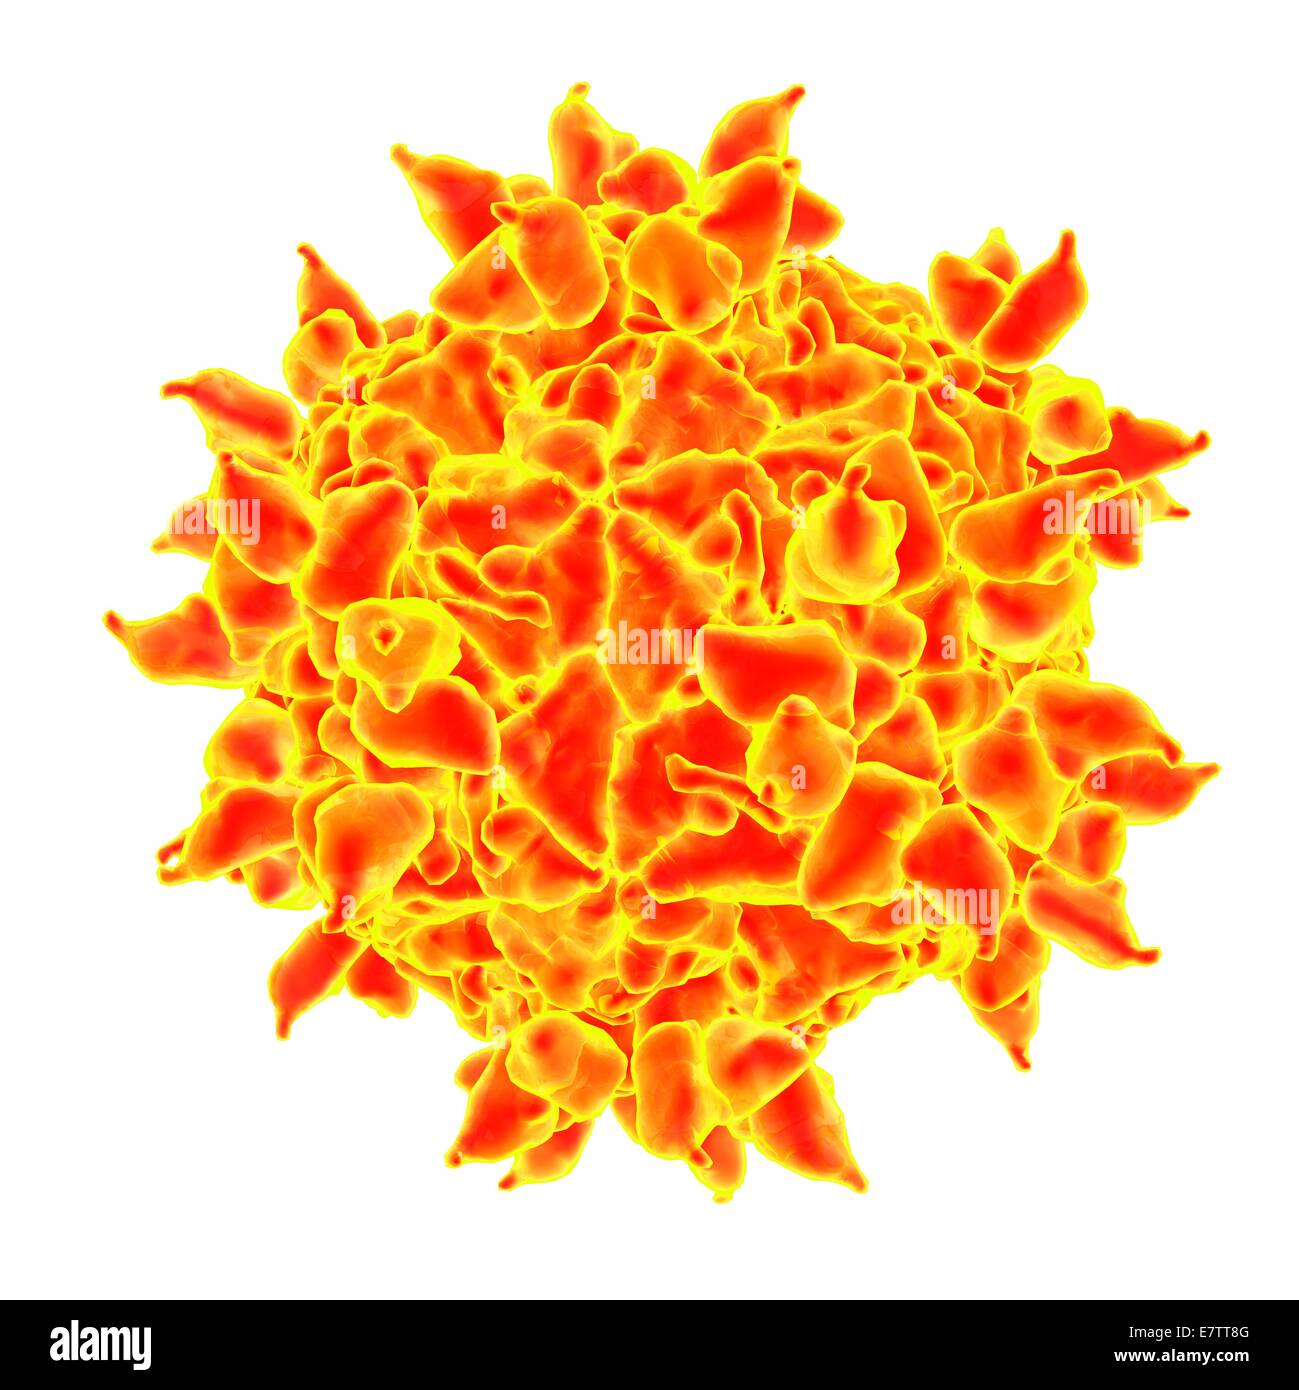 Human rhinovirus, computer artwork. Stock Photo